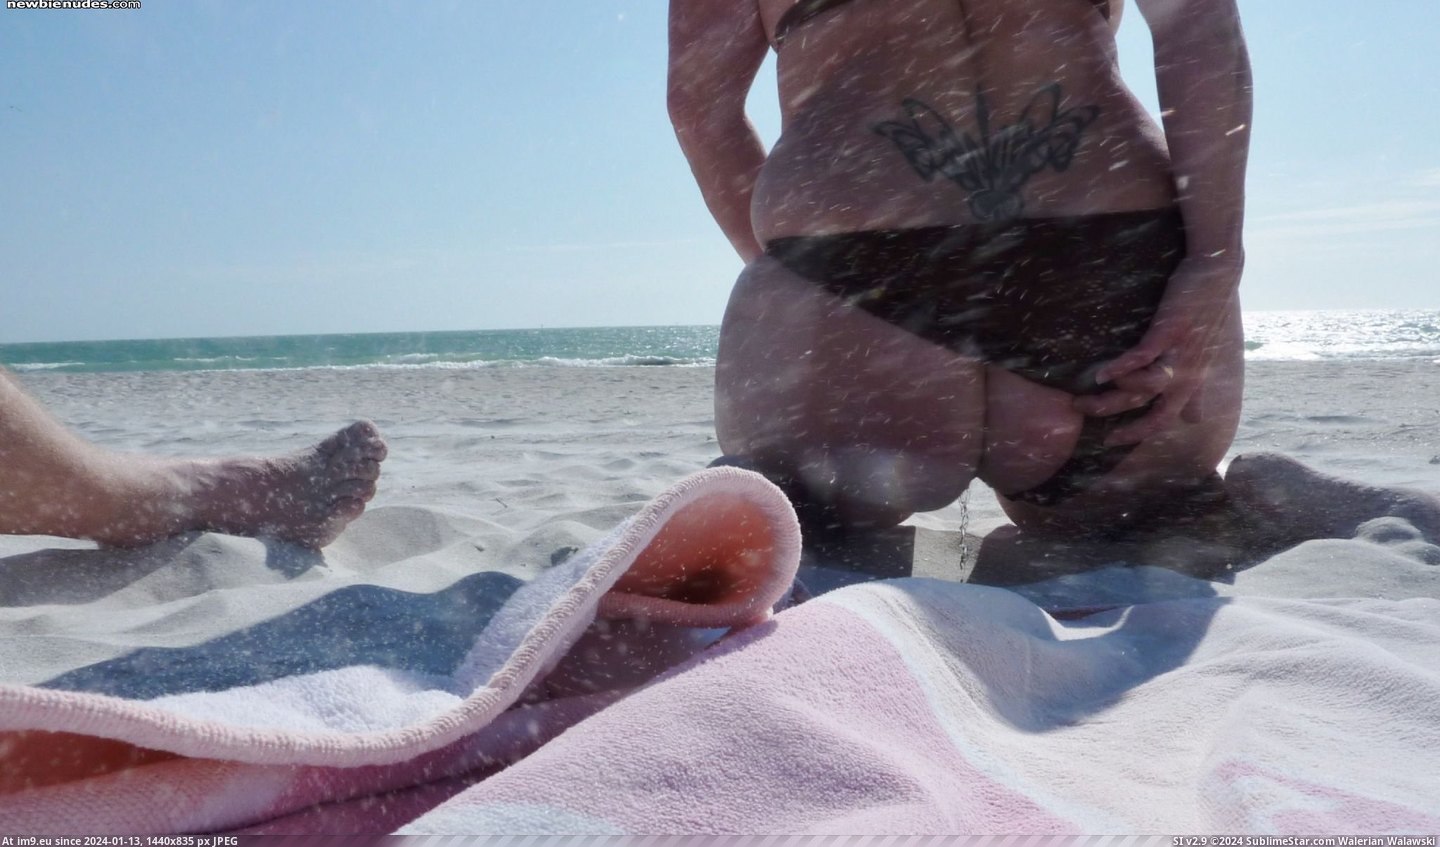  #Beach  [Pee] At the beach Pic. (Bild von album My r/PEE favs))